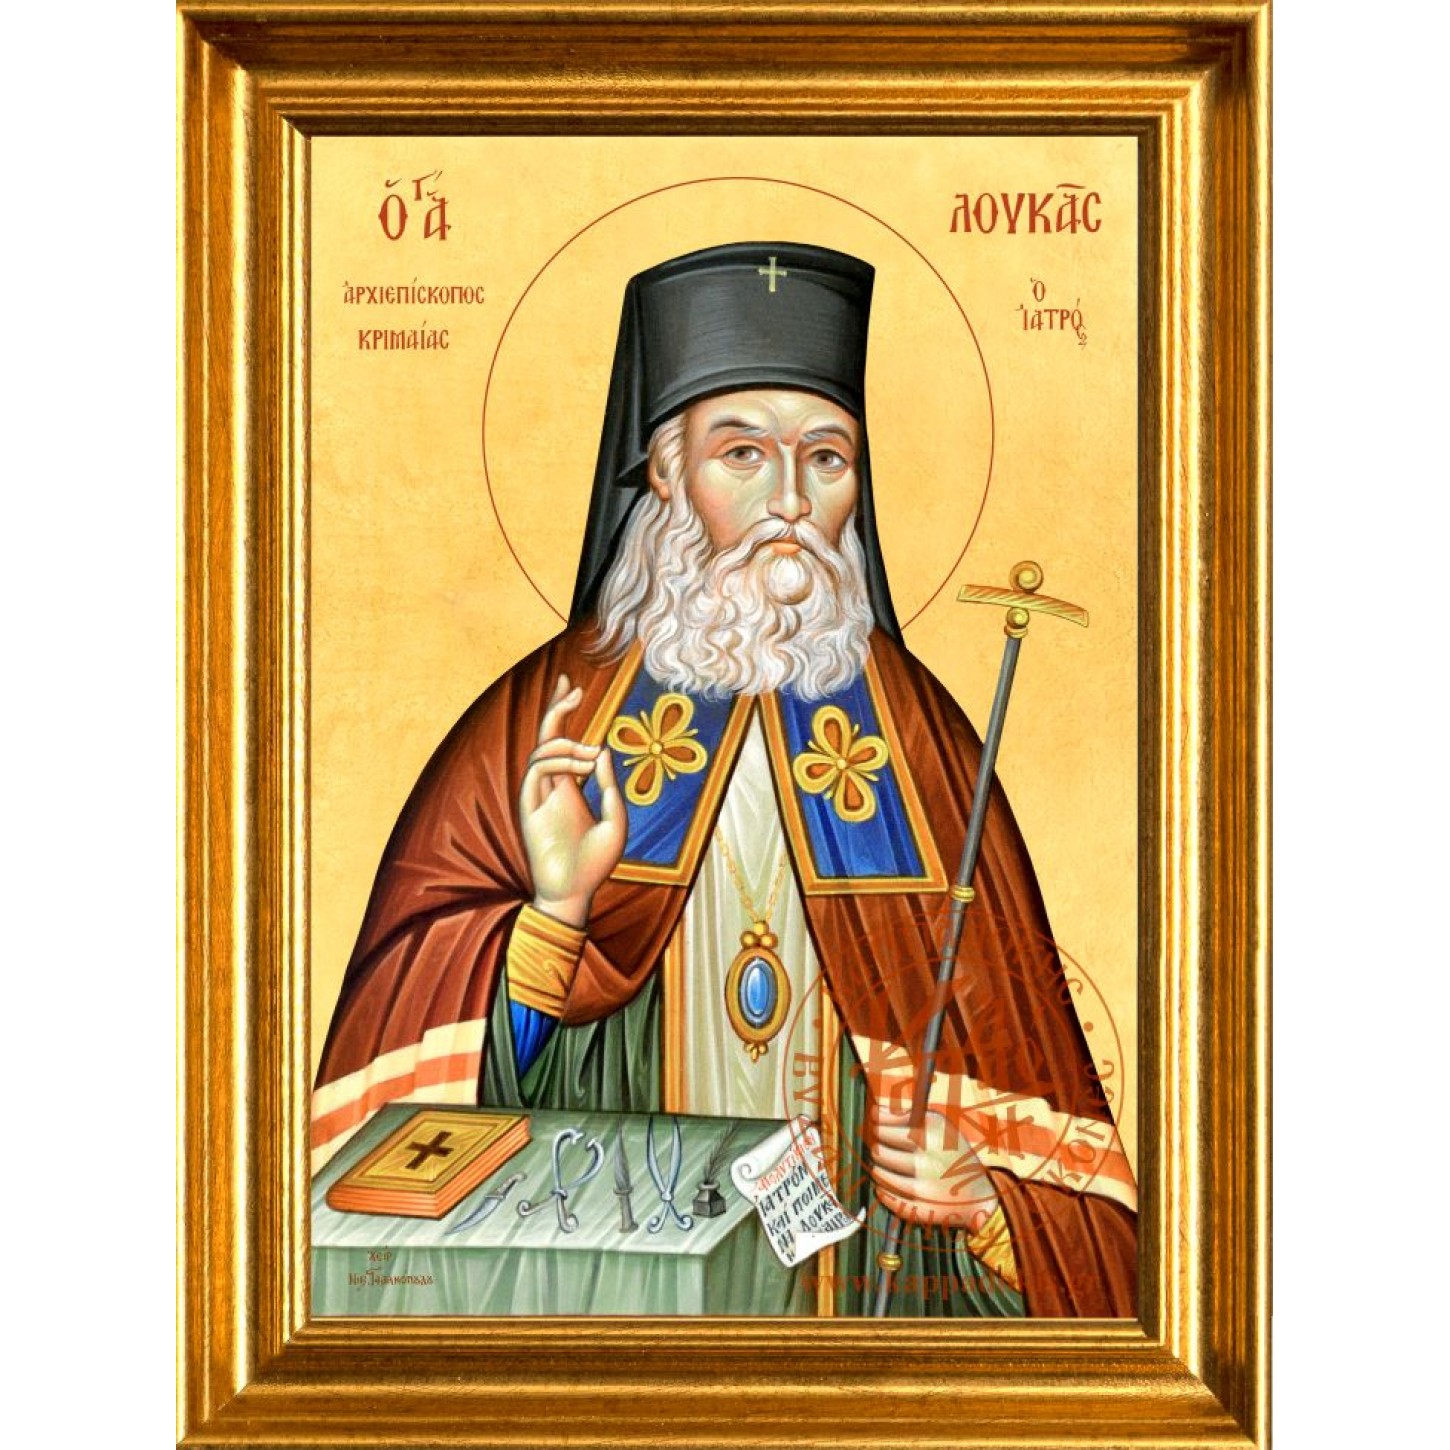 Άγιος Λουκάς ο ιατρός Αρχιεπίσκοπος Κριμαίας Α